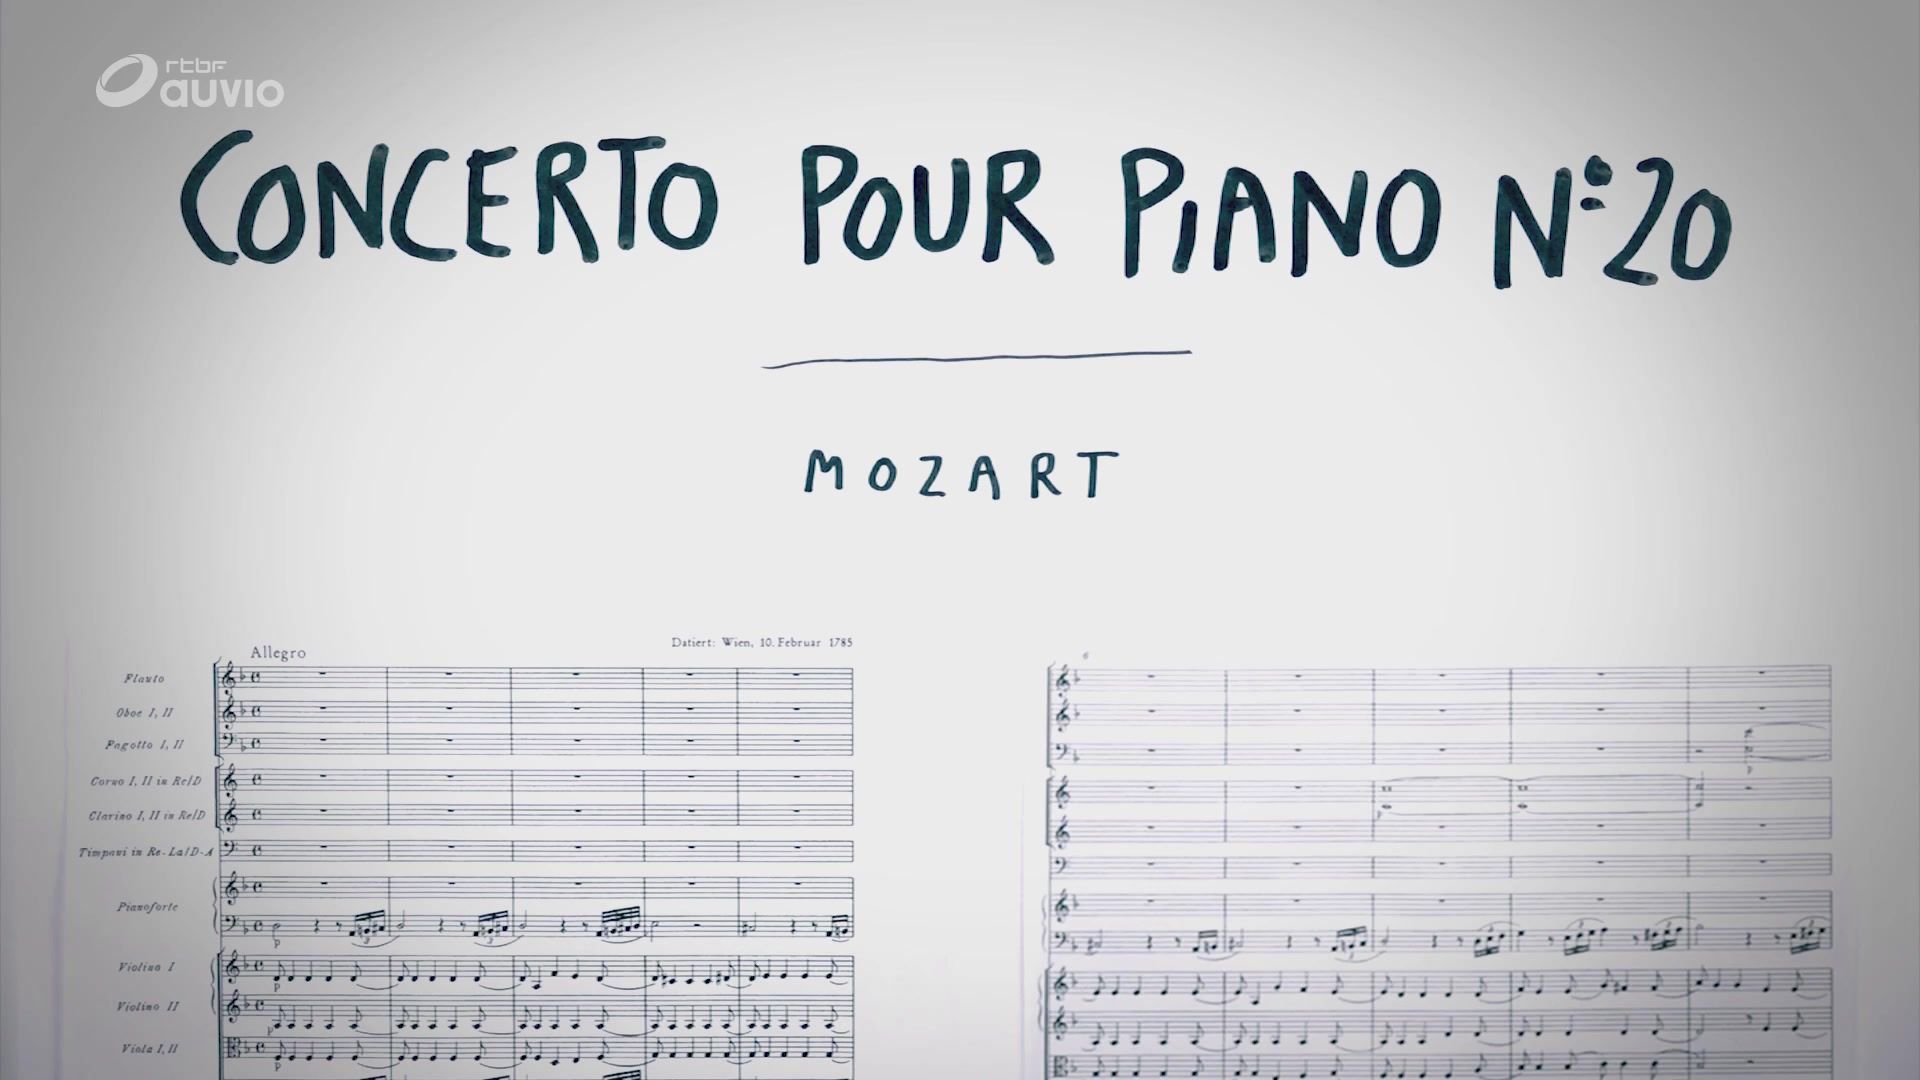 Je Sais Pas Vous : Mozart, le Concerto pour piano n° 20 en ré mineur